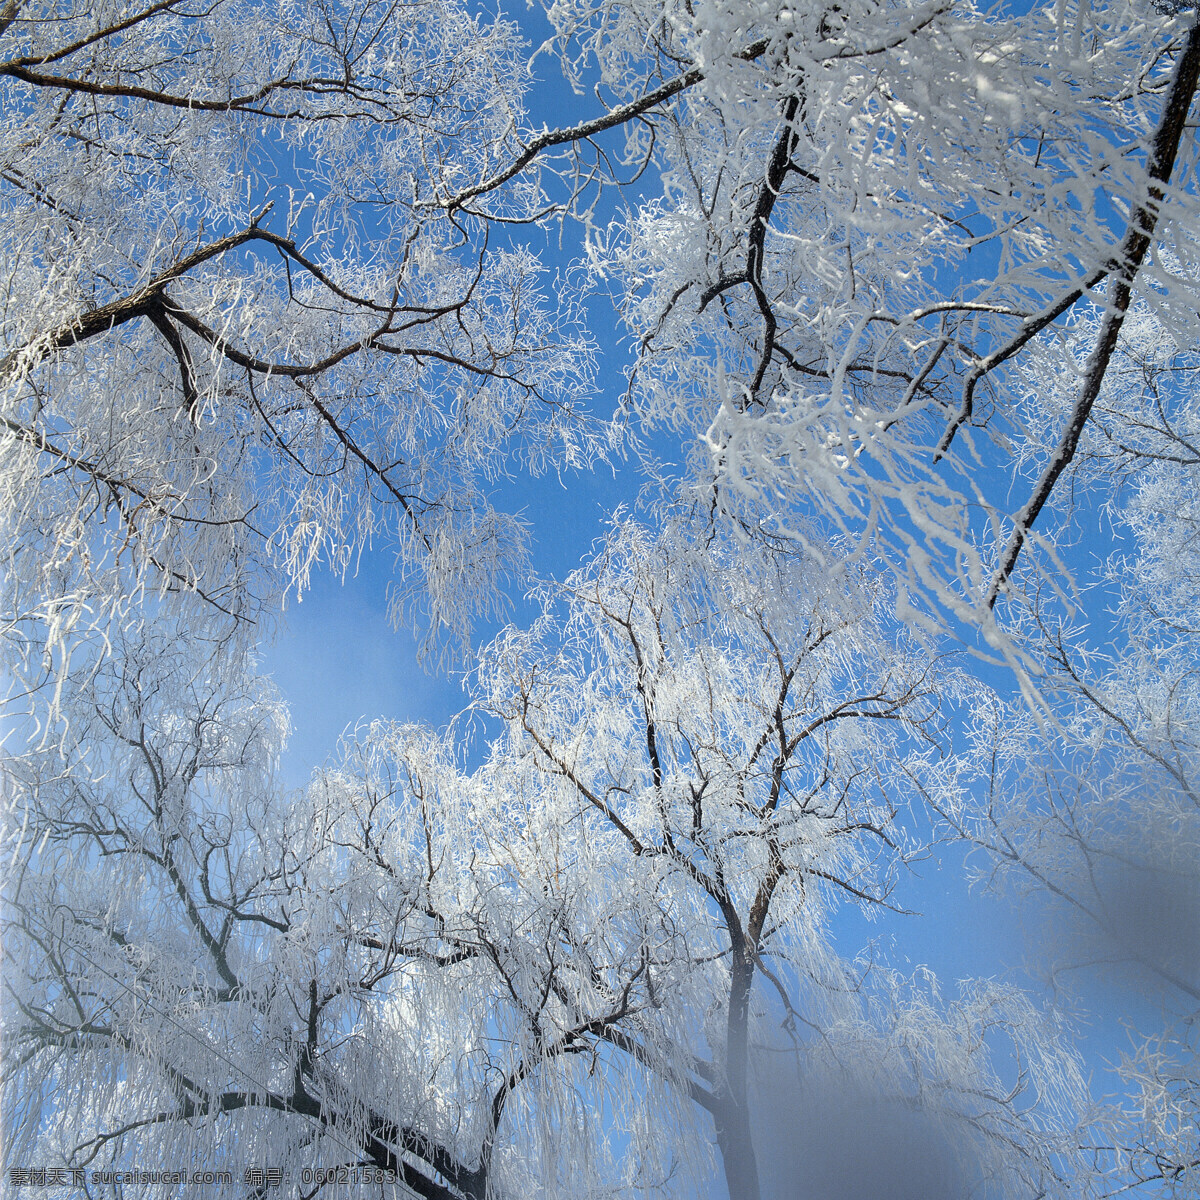 树木 上 冰花 大自然 自然风景 美丽风景 美景 景色 风景摄影 旅游景区 旅游风景 旅游奇观 雪山 雪景 冬天风景 结冰的树木 山水风景 风景图片